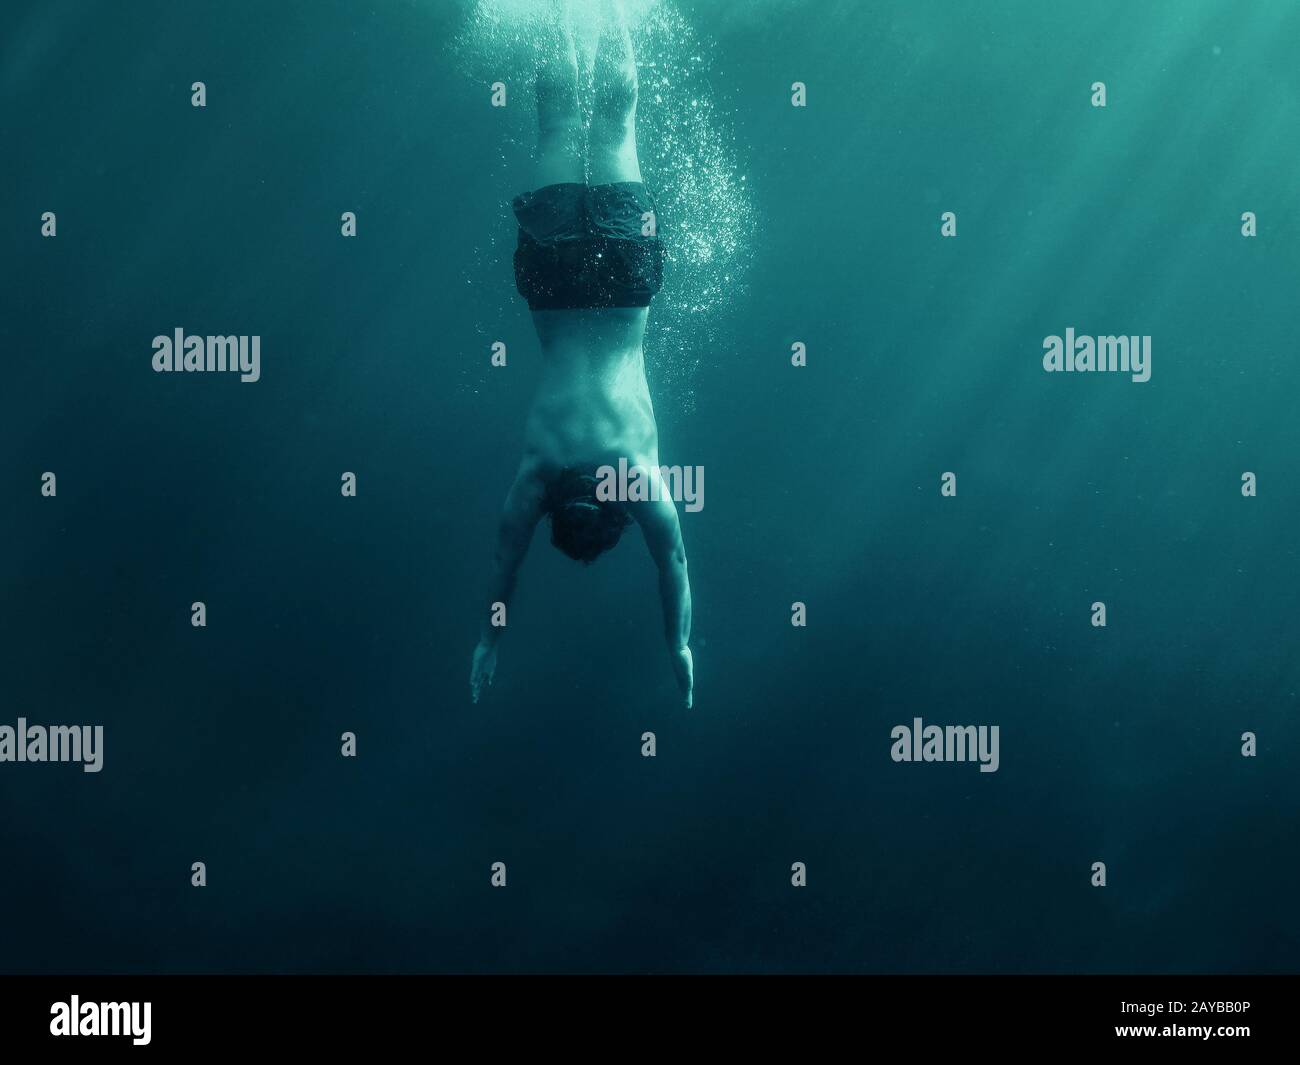 Homme sautant dans l'eau. Prise de vue sous-marine. Concept de vacances, de sports et de style de vie actif. Banque D'Images